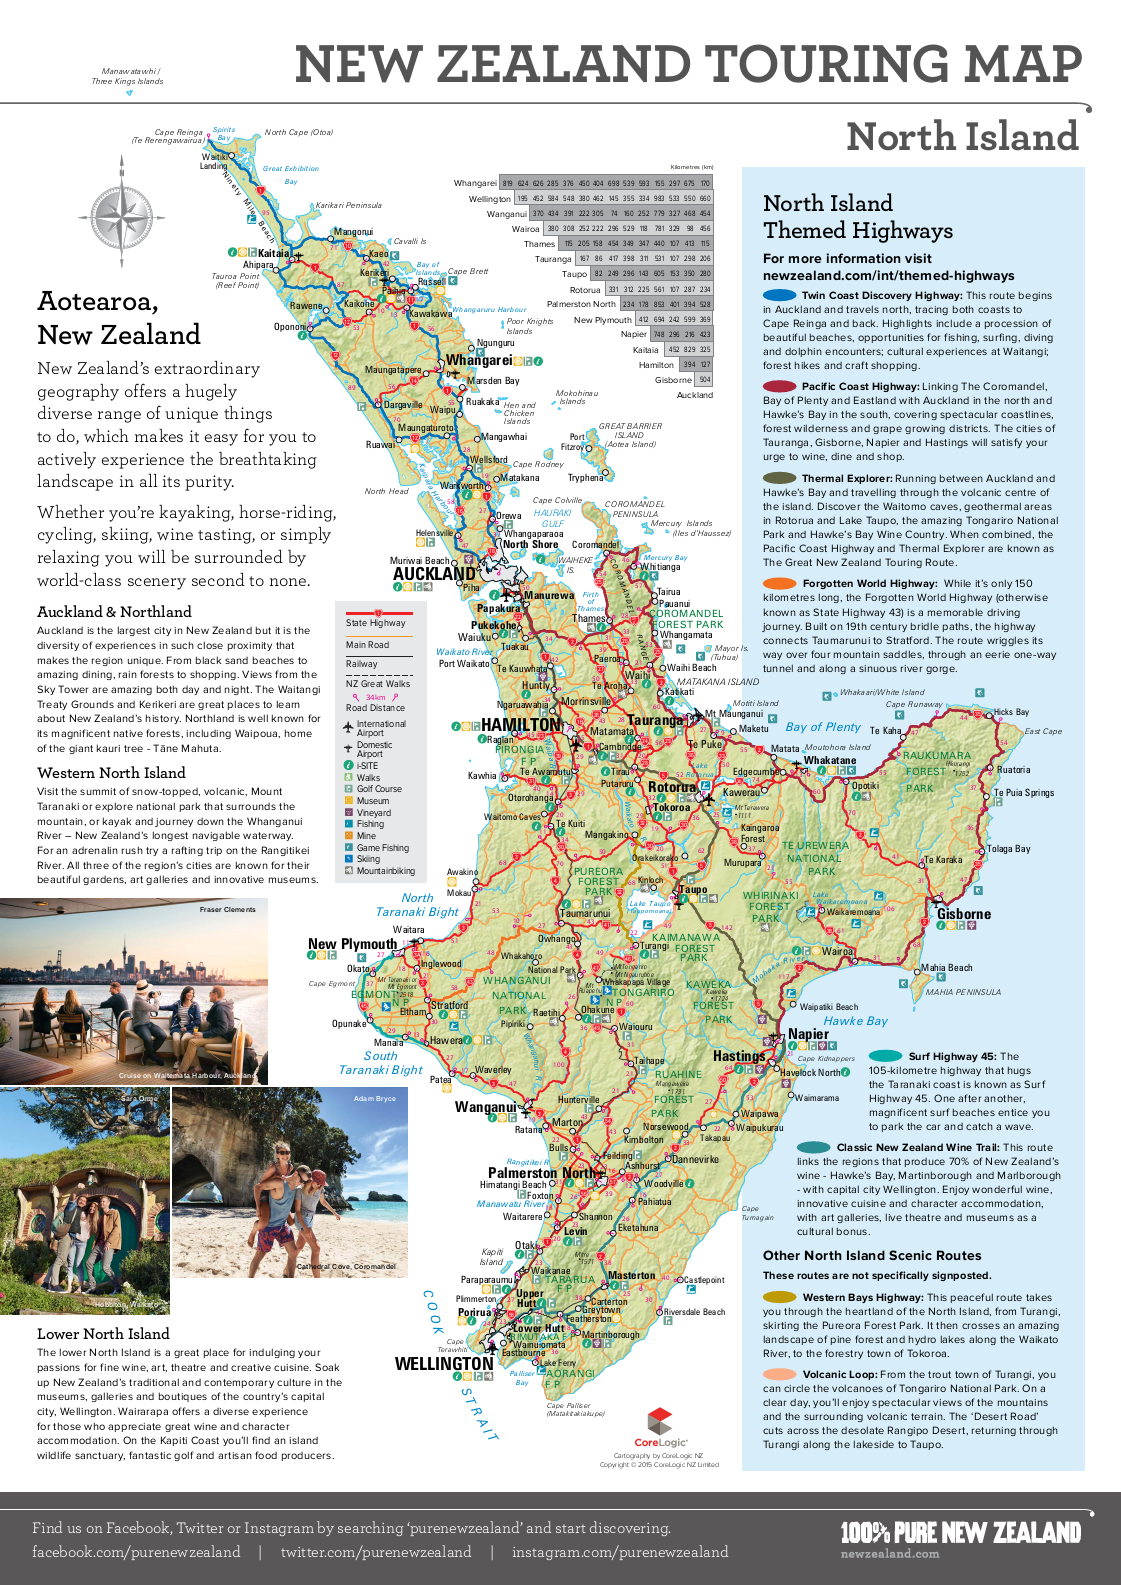 还可以下载下面的新西兰官方旅游地图pdf版图片